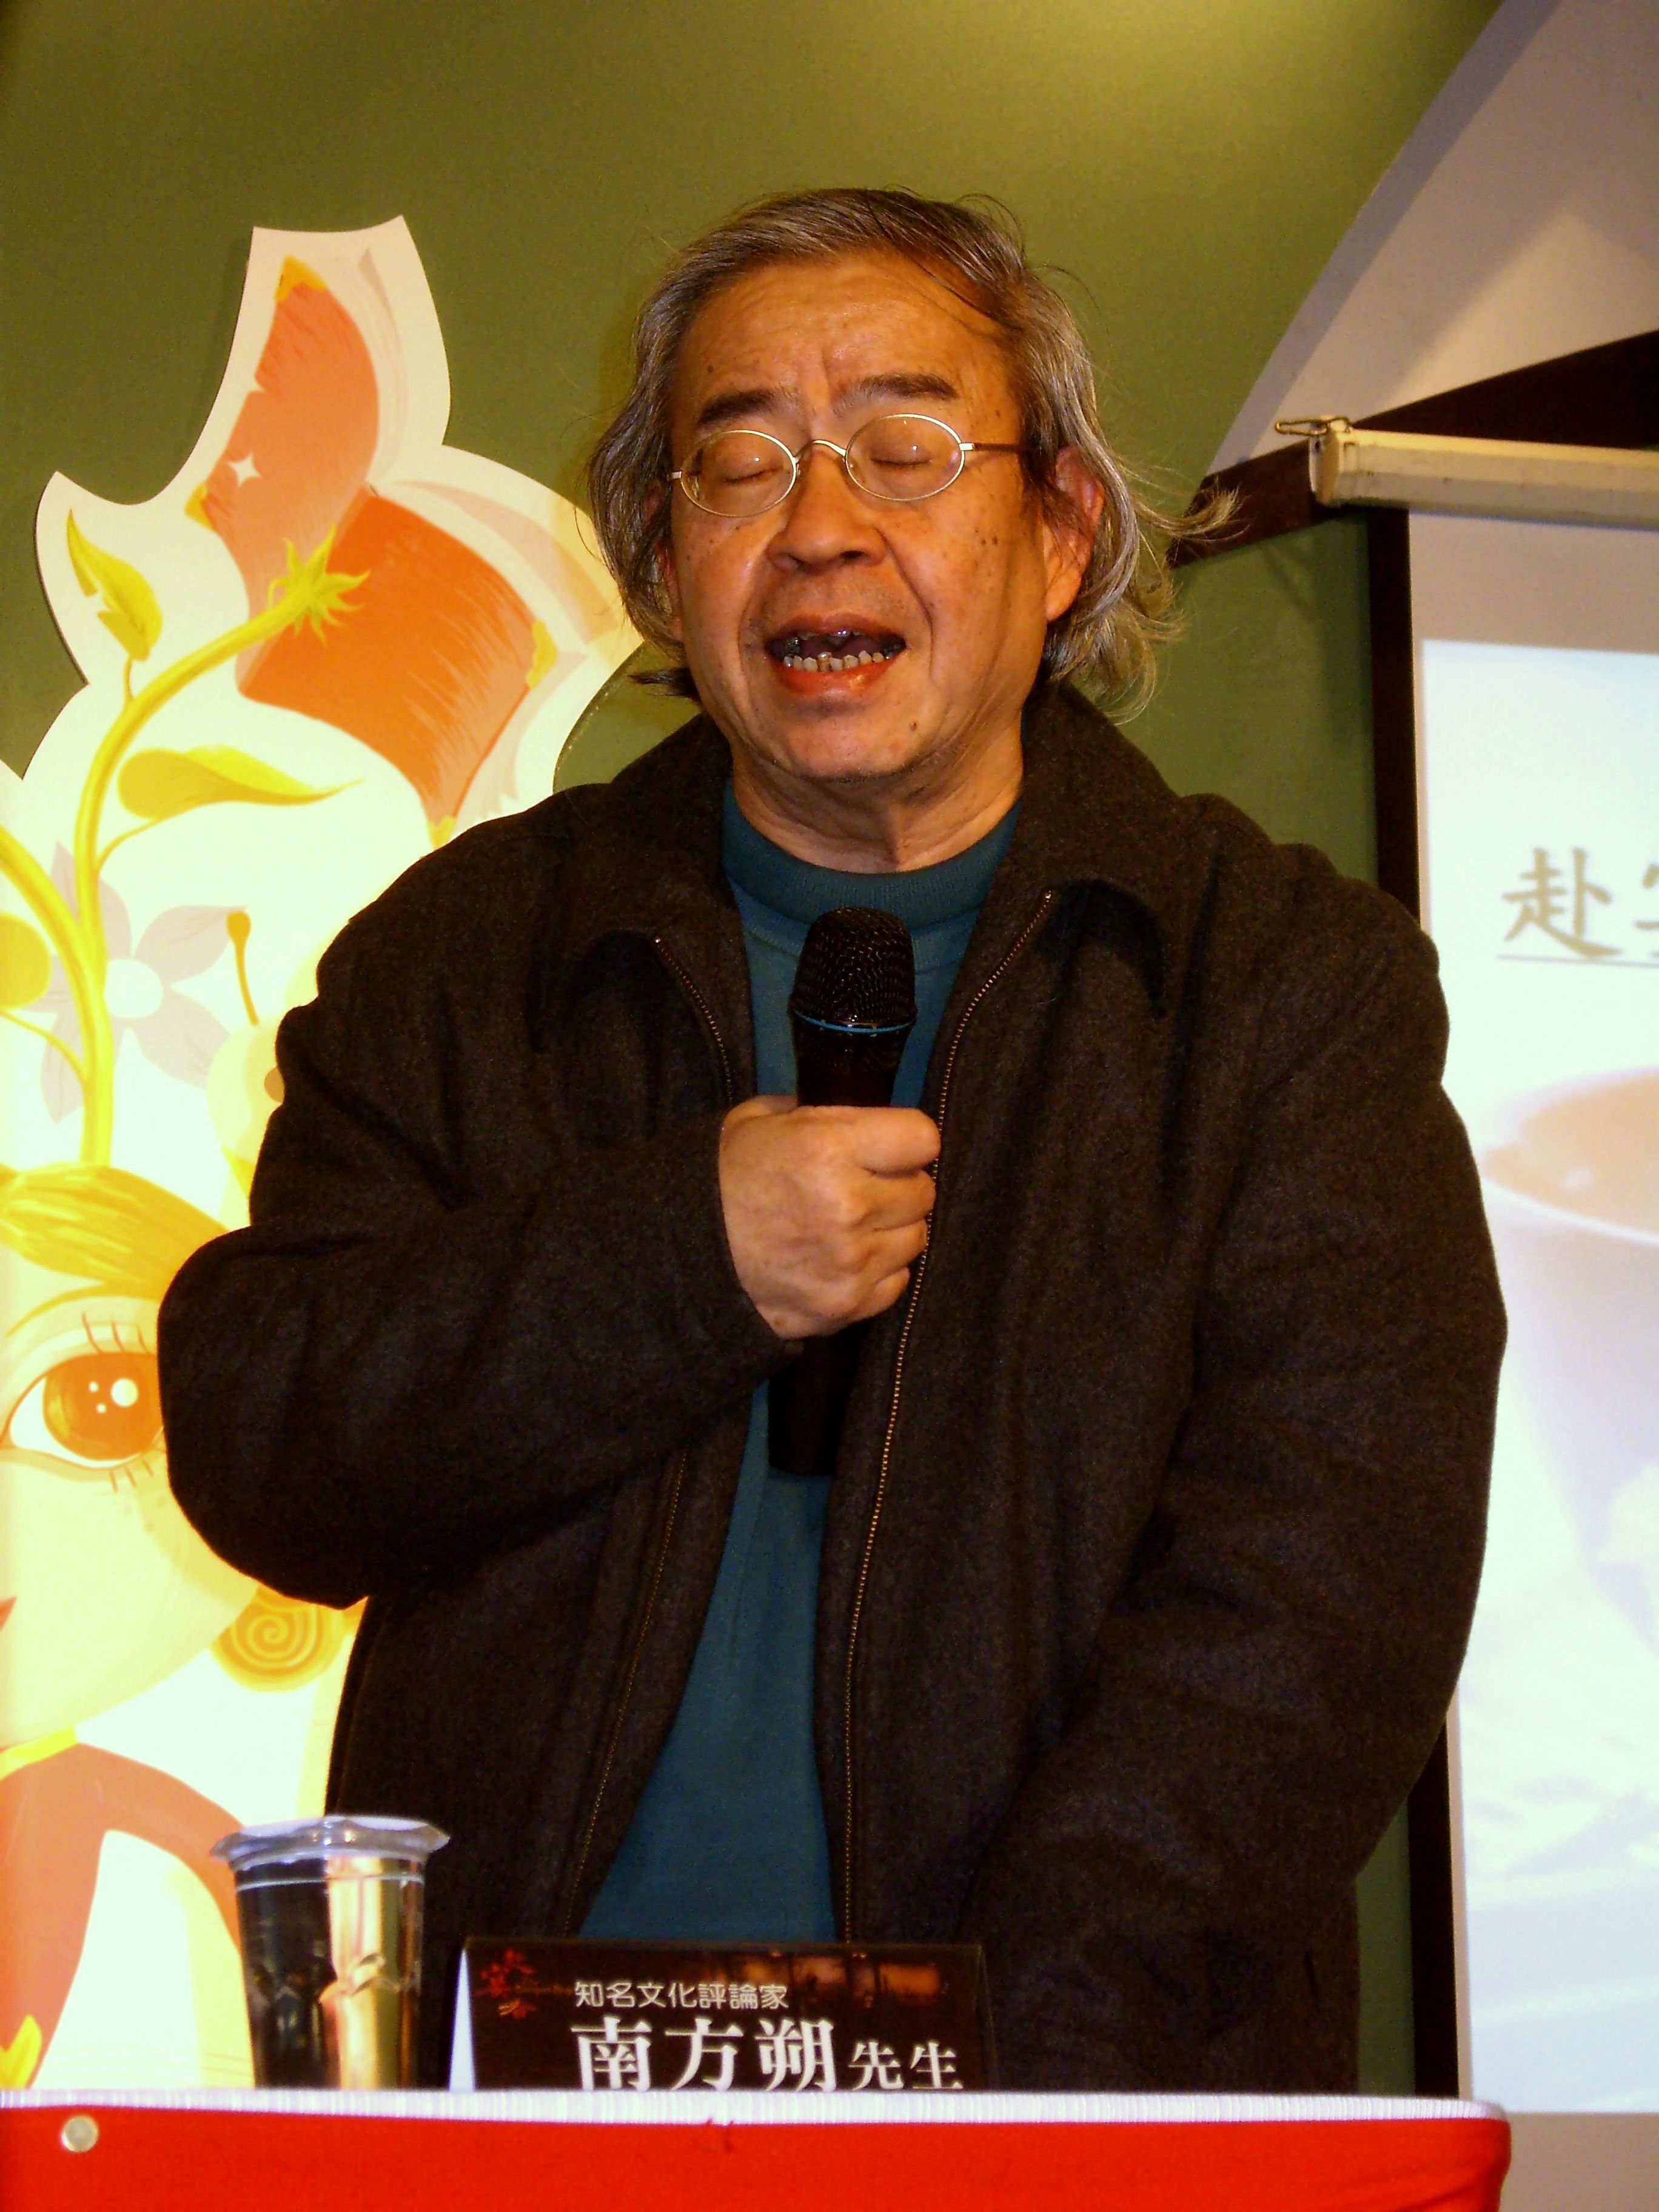 Wang Hsing-ching - Wikipedia